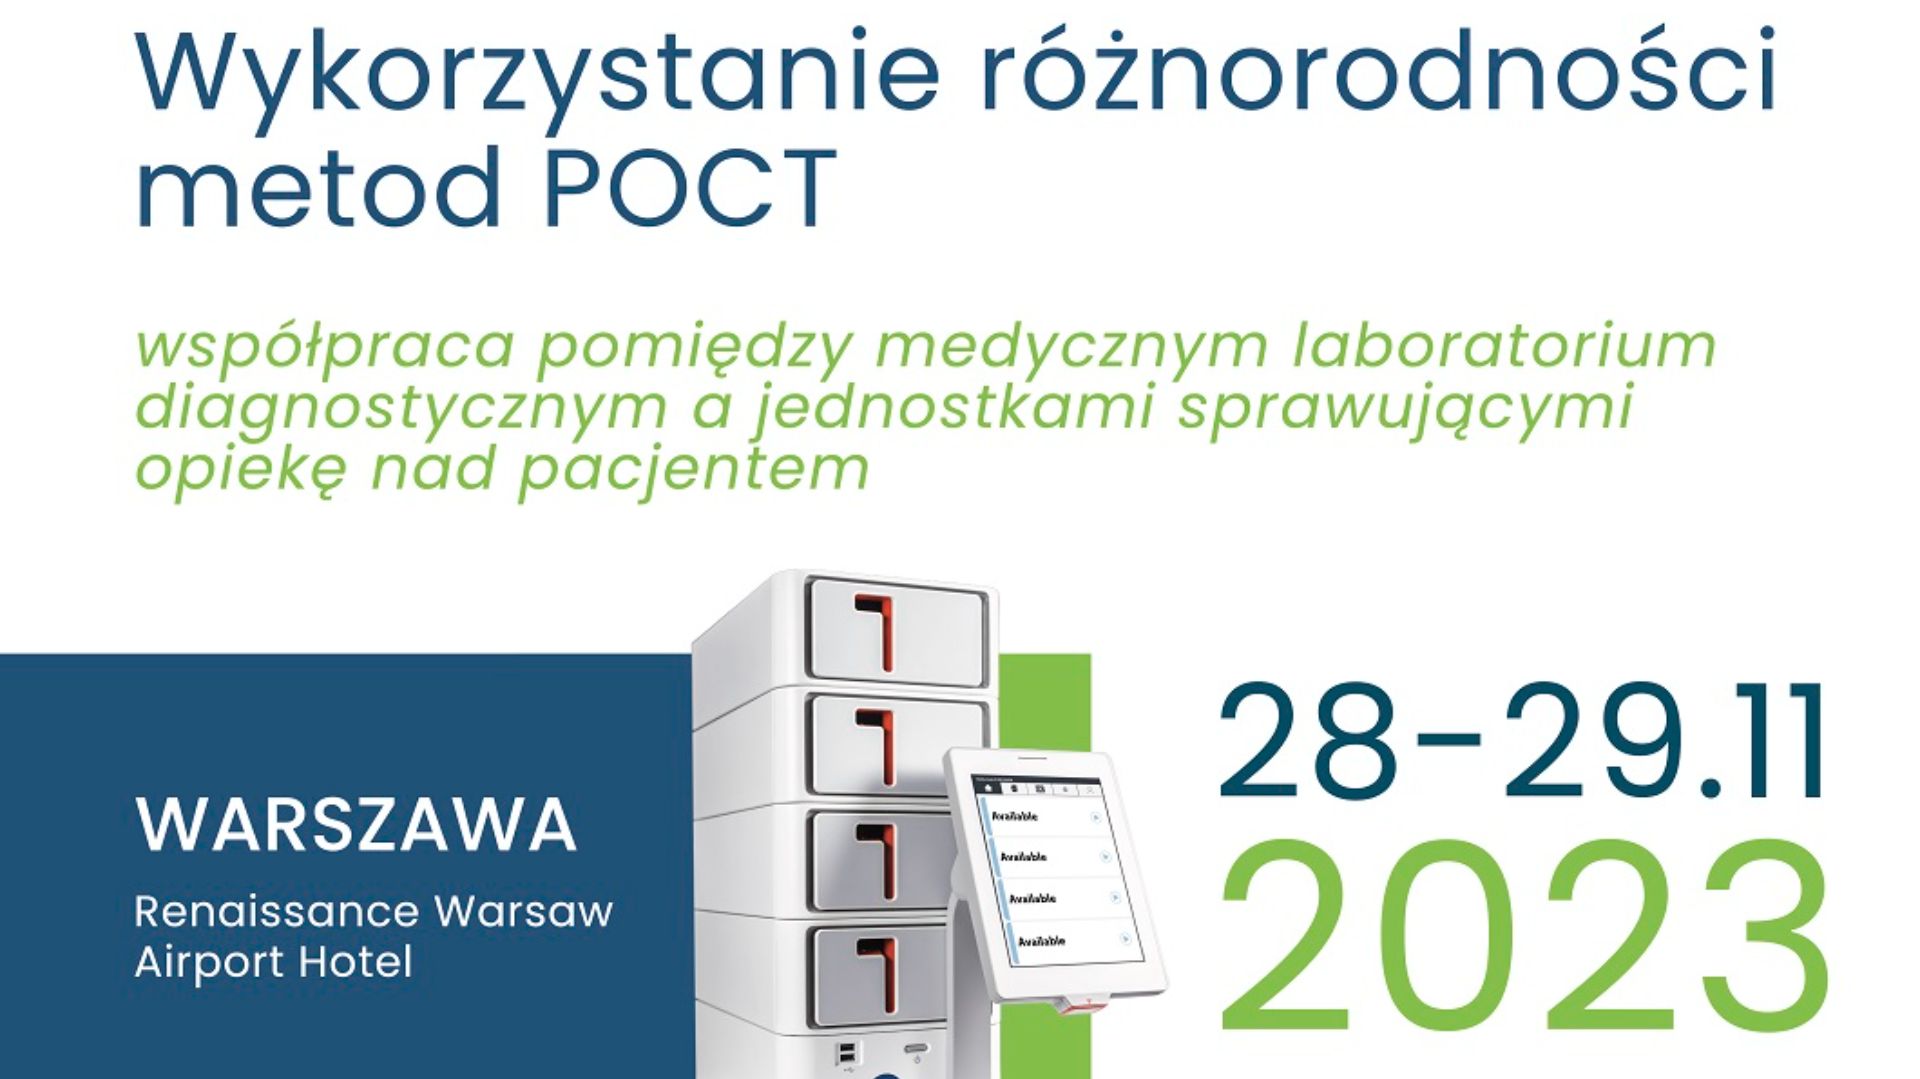 Wykorzystanie różnorodności metod POCT – współpraca pomiędzy medycznym laboratorium diagnostycznym a jednostkami sprawującymi opiekę nad pacjentem <br> <br>

Data 28-29.11.2023 <br> <br>

Miejsce: <br>
Renaissance Warsaw Airport Hotel <br>
ul. Żwirki i Wigury 1H, <br>
00-906 Warszawa <br> <br>


Konferencja została objęta Patronatem Honorowym Krajowej Izby Diagnostów Laboratoryjnych.